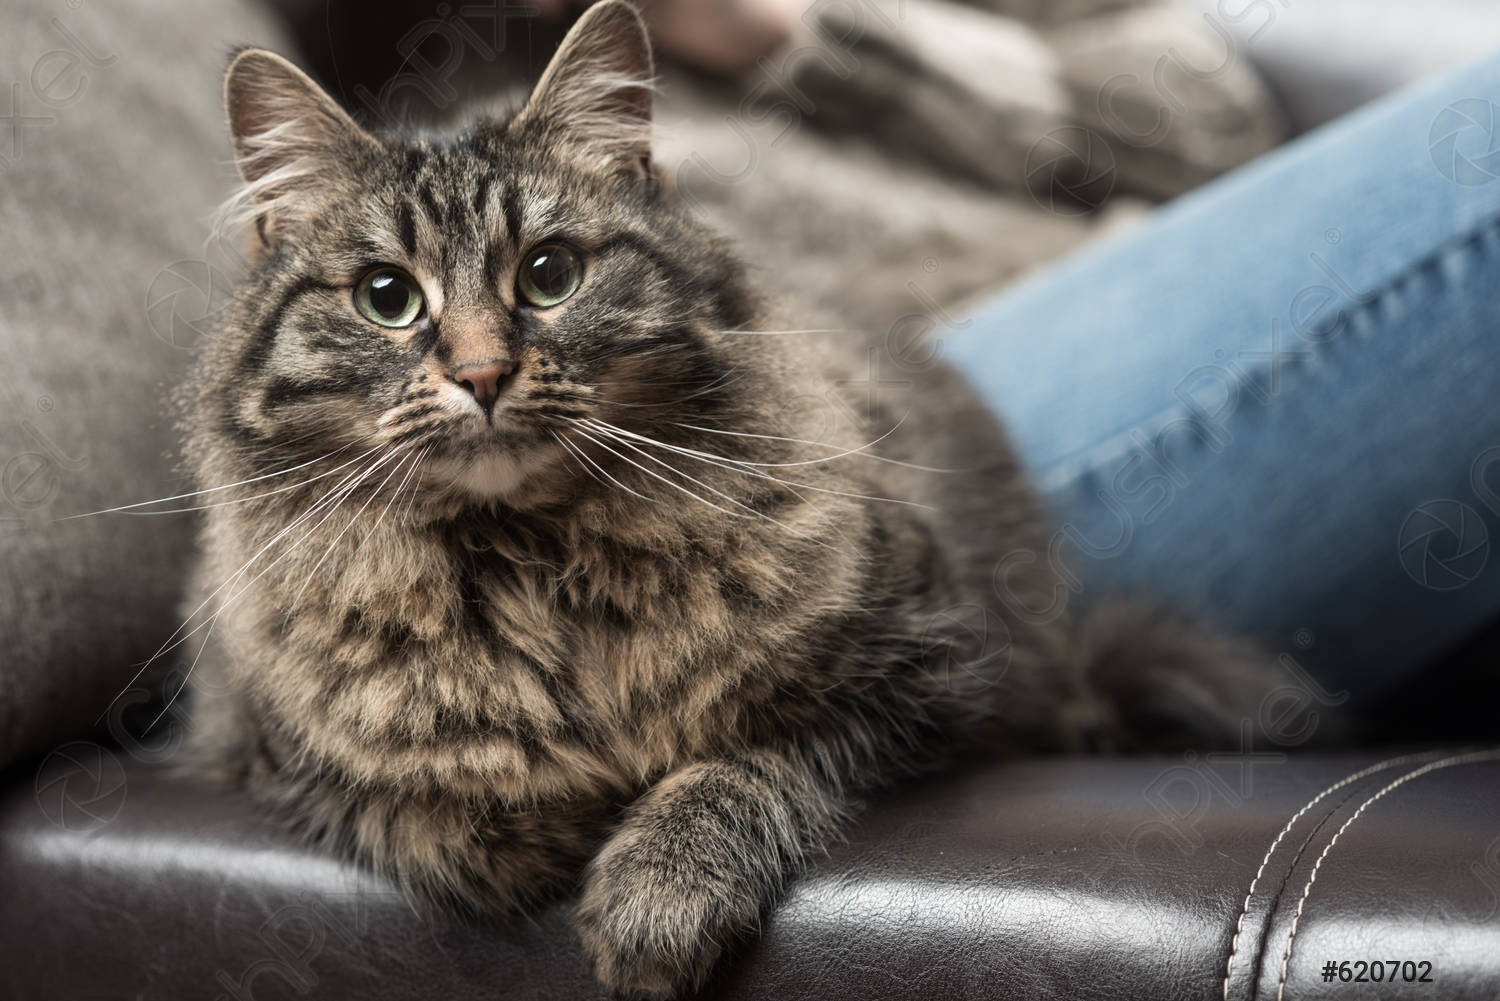 Царапины от кошки на диване